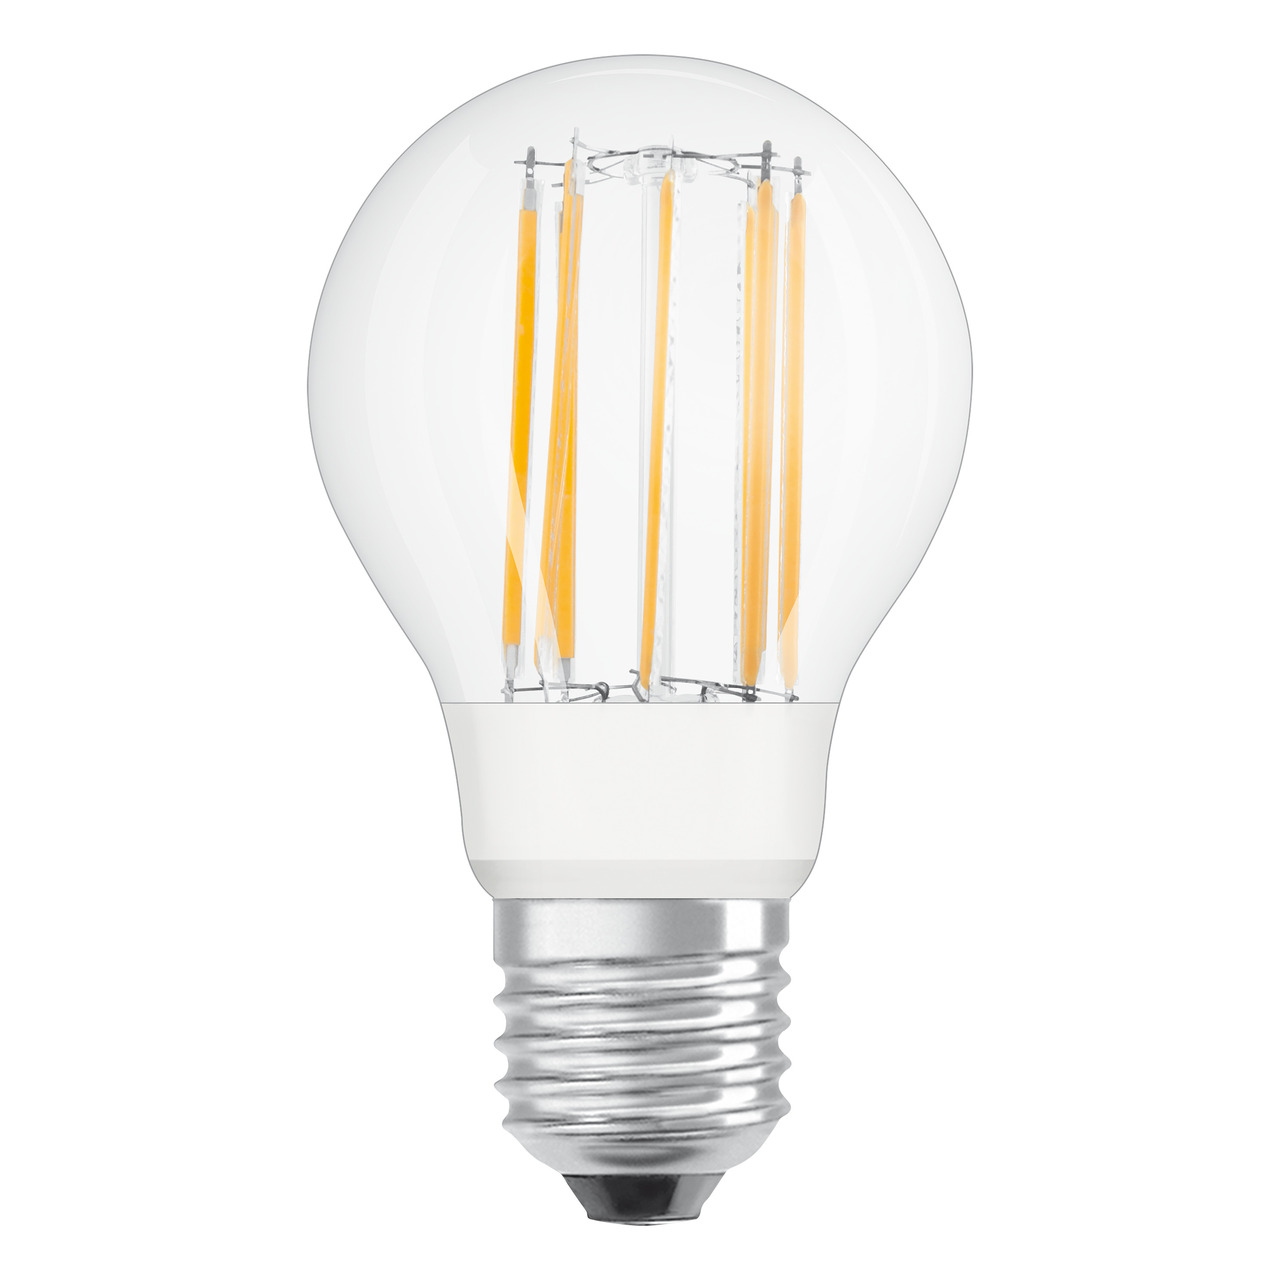 OSRAM LED Superstar 11-W-Filament-LED-Lampe E27- warmweiss- klar- dimmbar- 1521 lm unter Beleuchtung